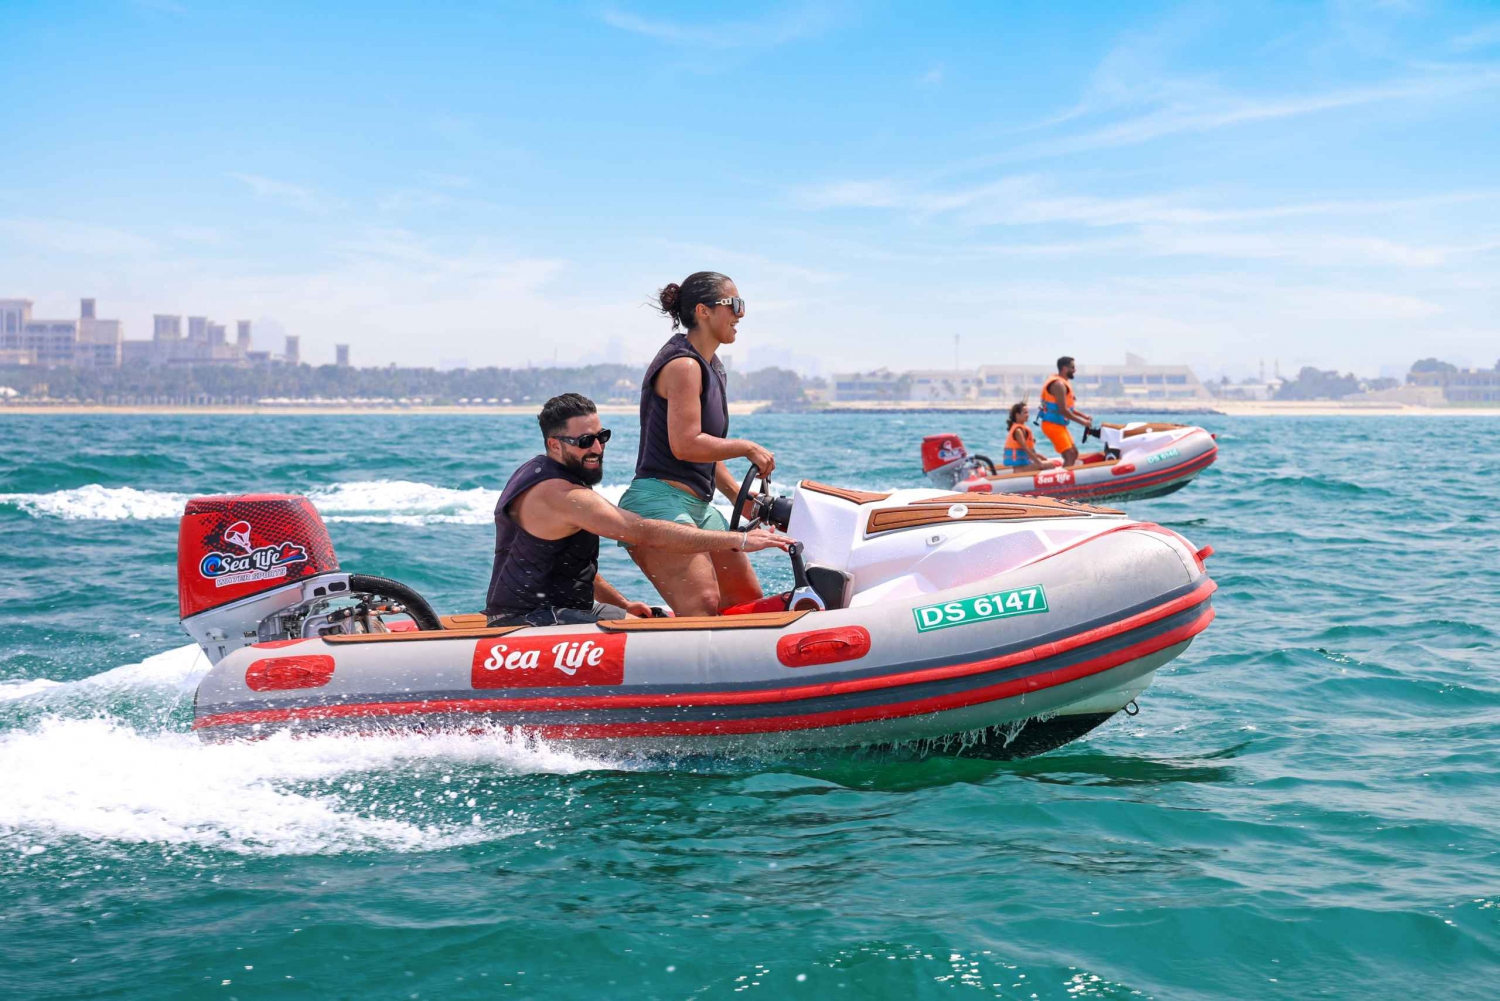 Dubai: Experiencia en barco sin conductor para 1 ó 2 personas